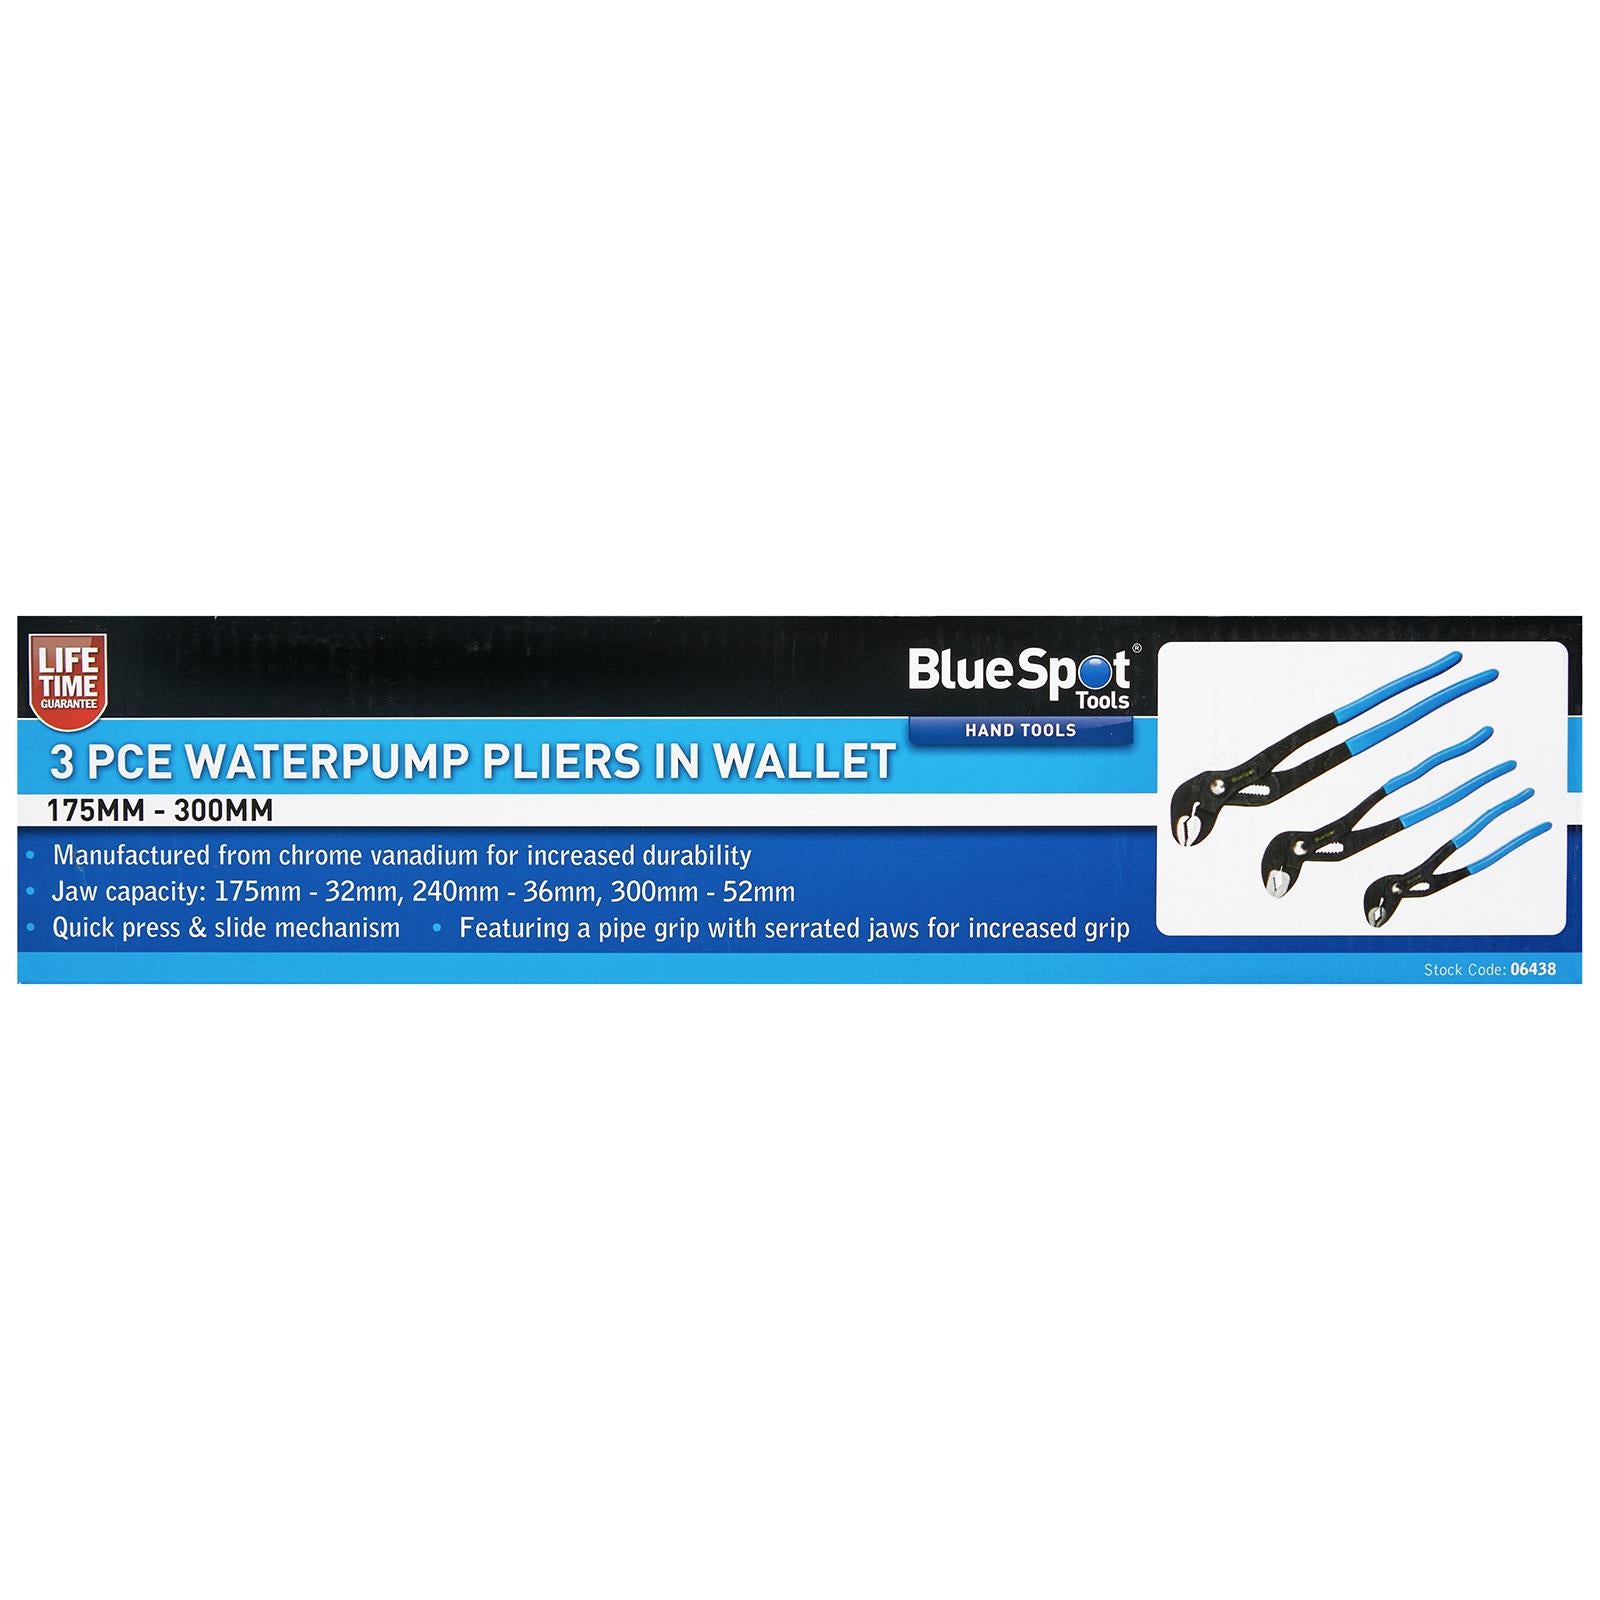 BlueSpot Waterpump Pliers In Wallet 175mm-300mm 3 Piece